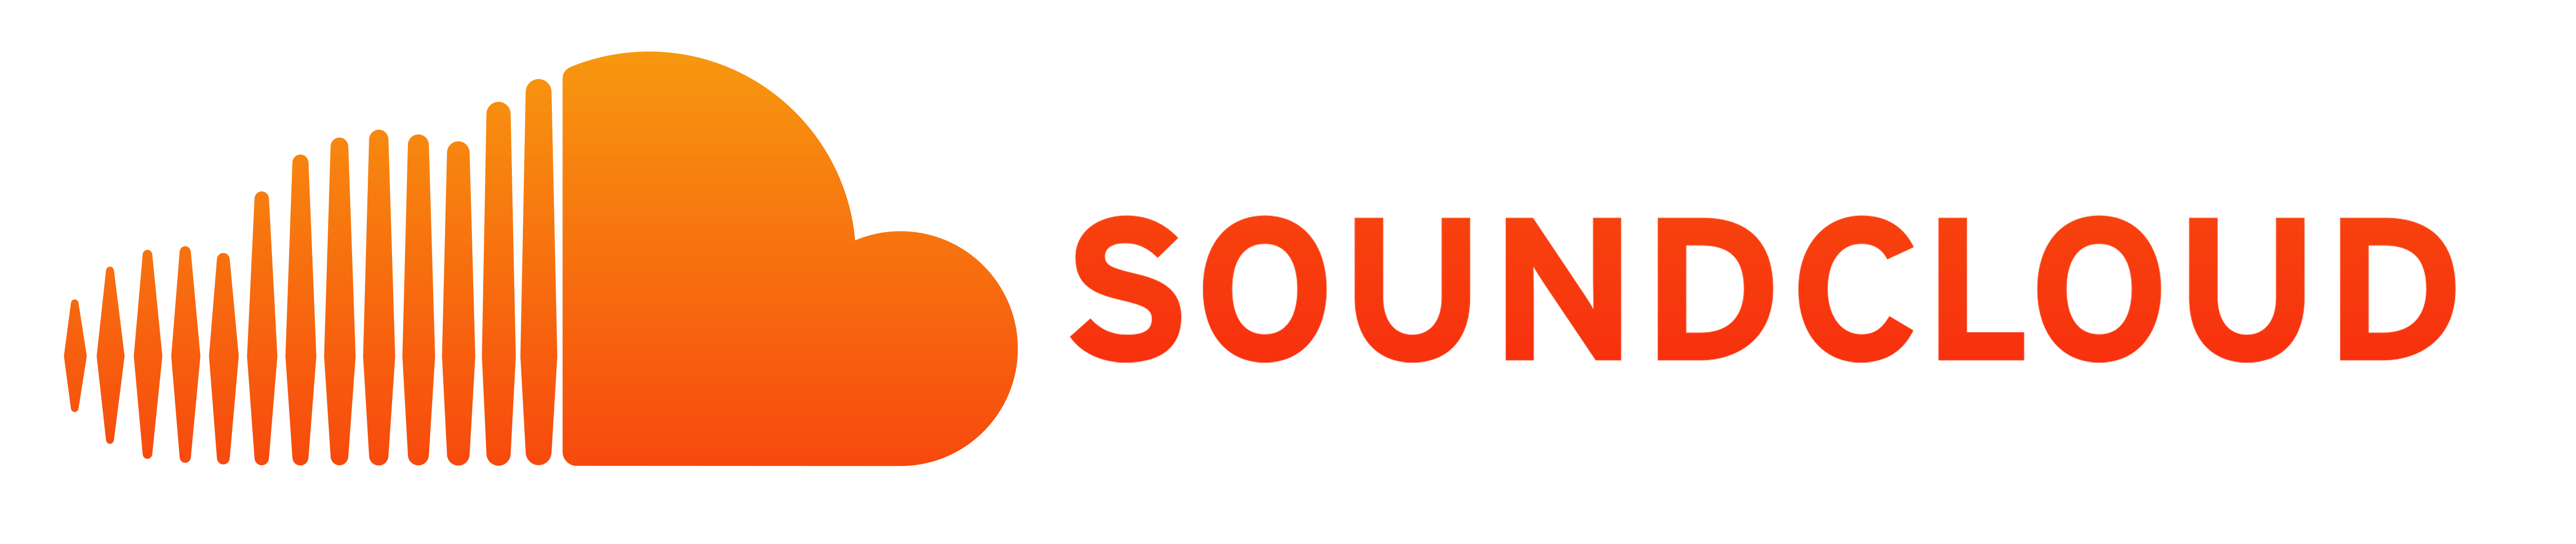 soundcloud downloader apk 2018